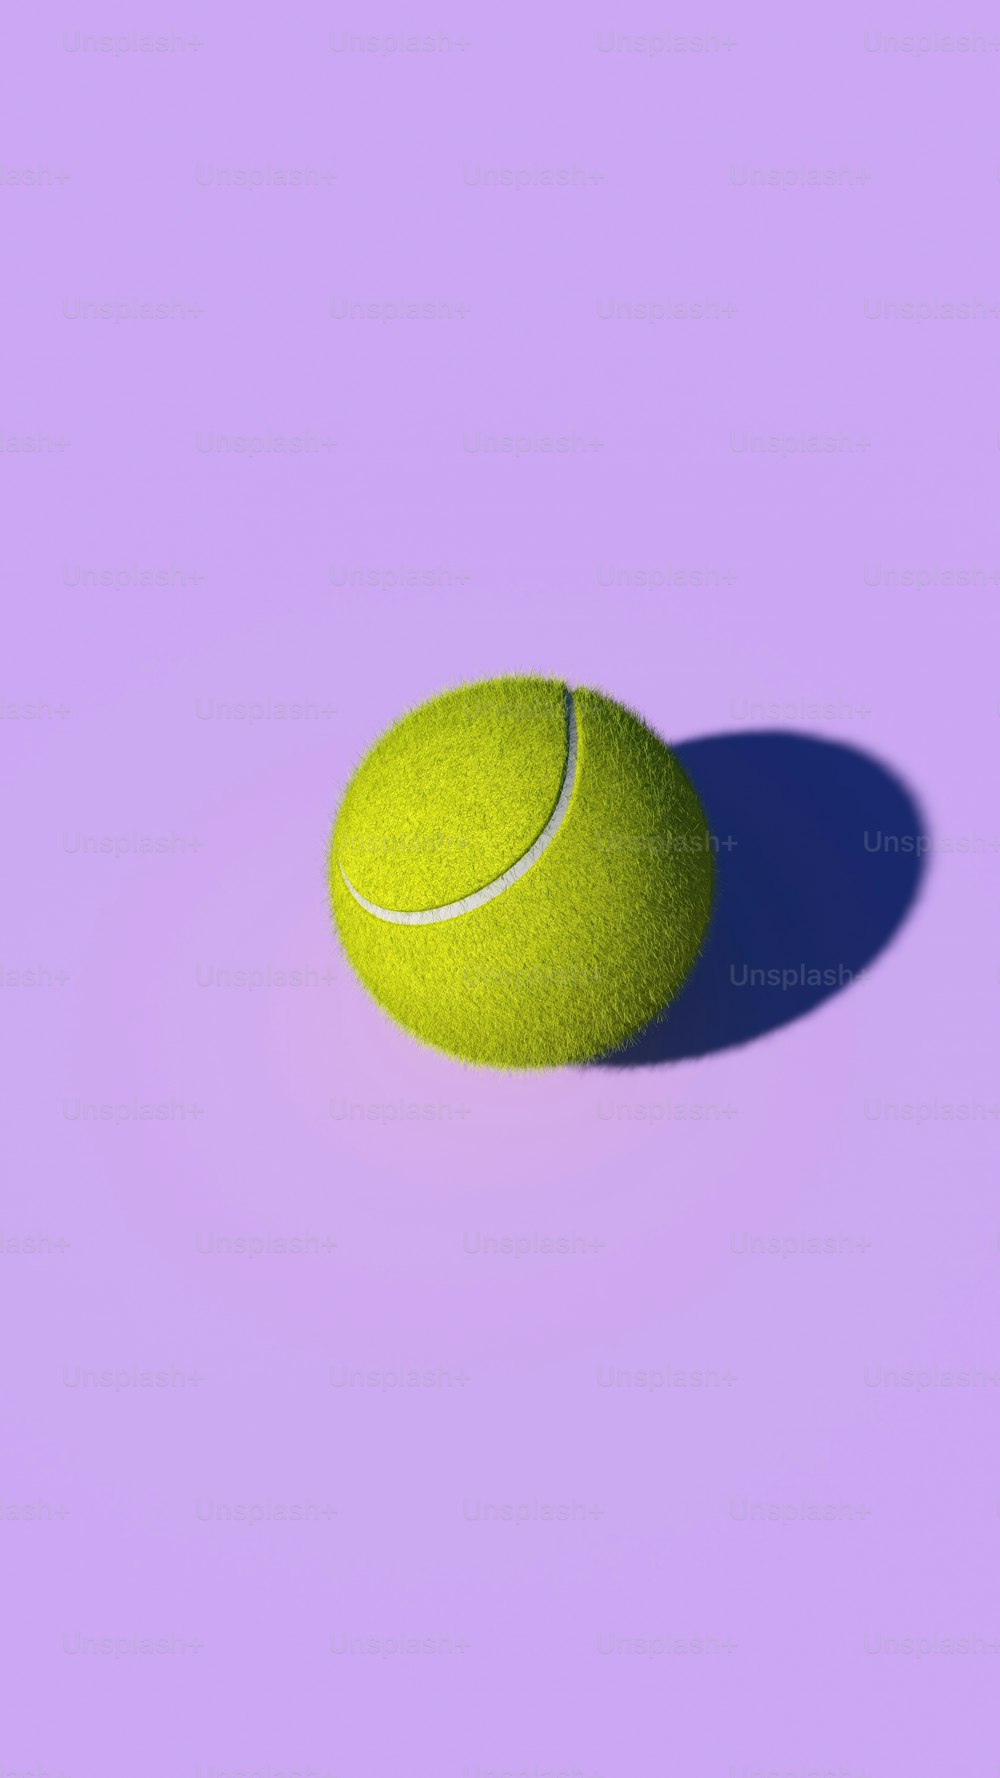 Una pelota de tenis amarilla sobre un fondo púrpura